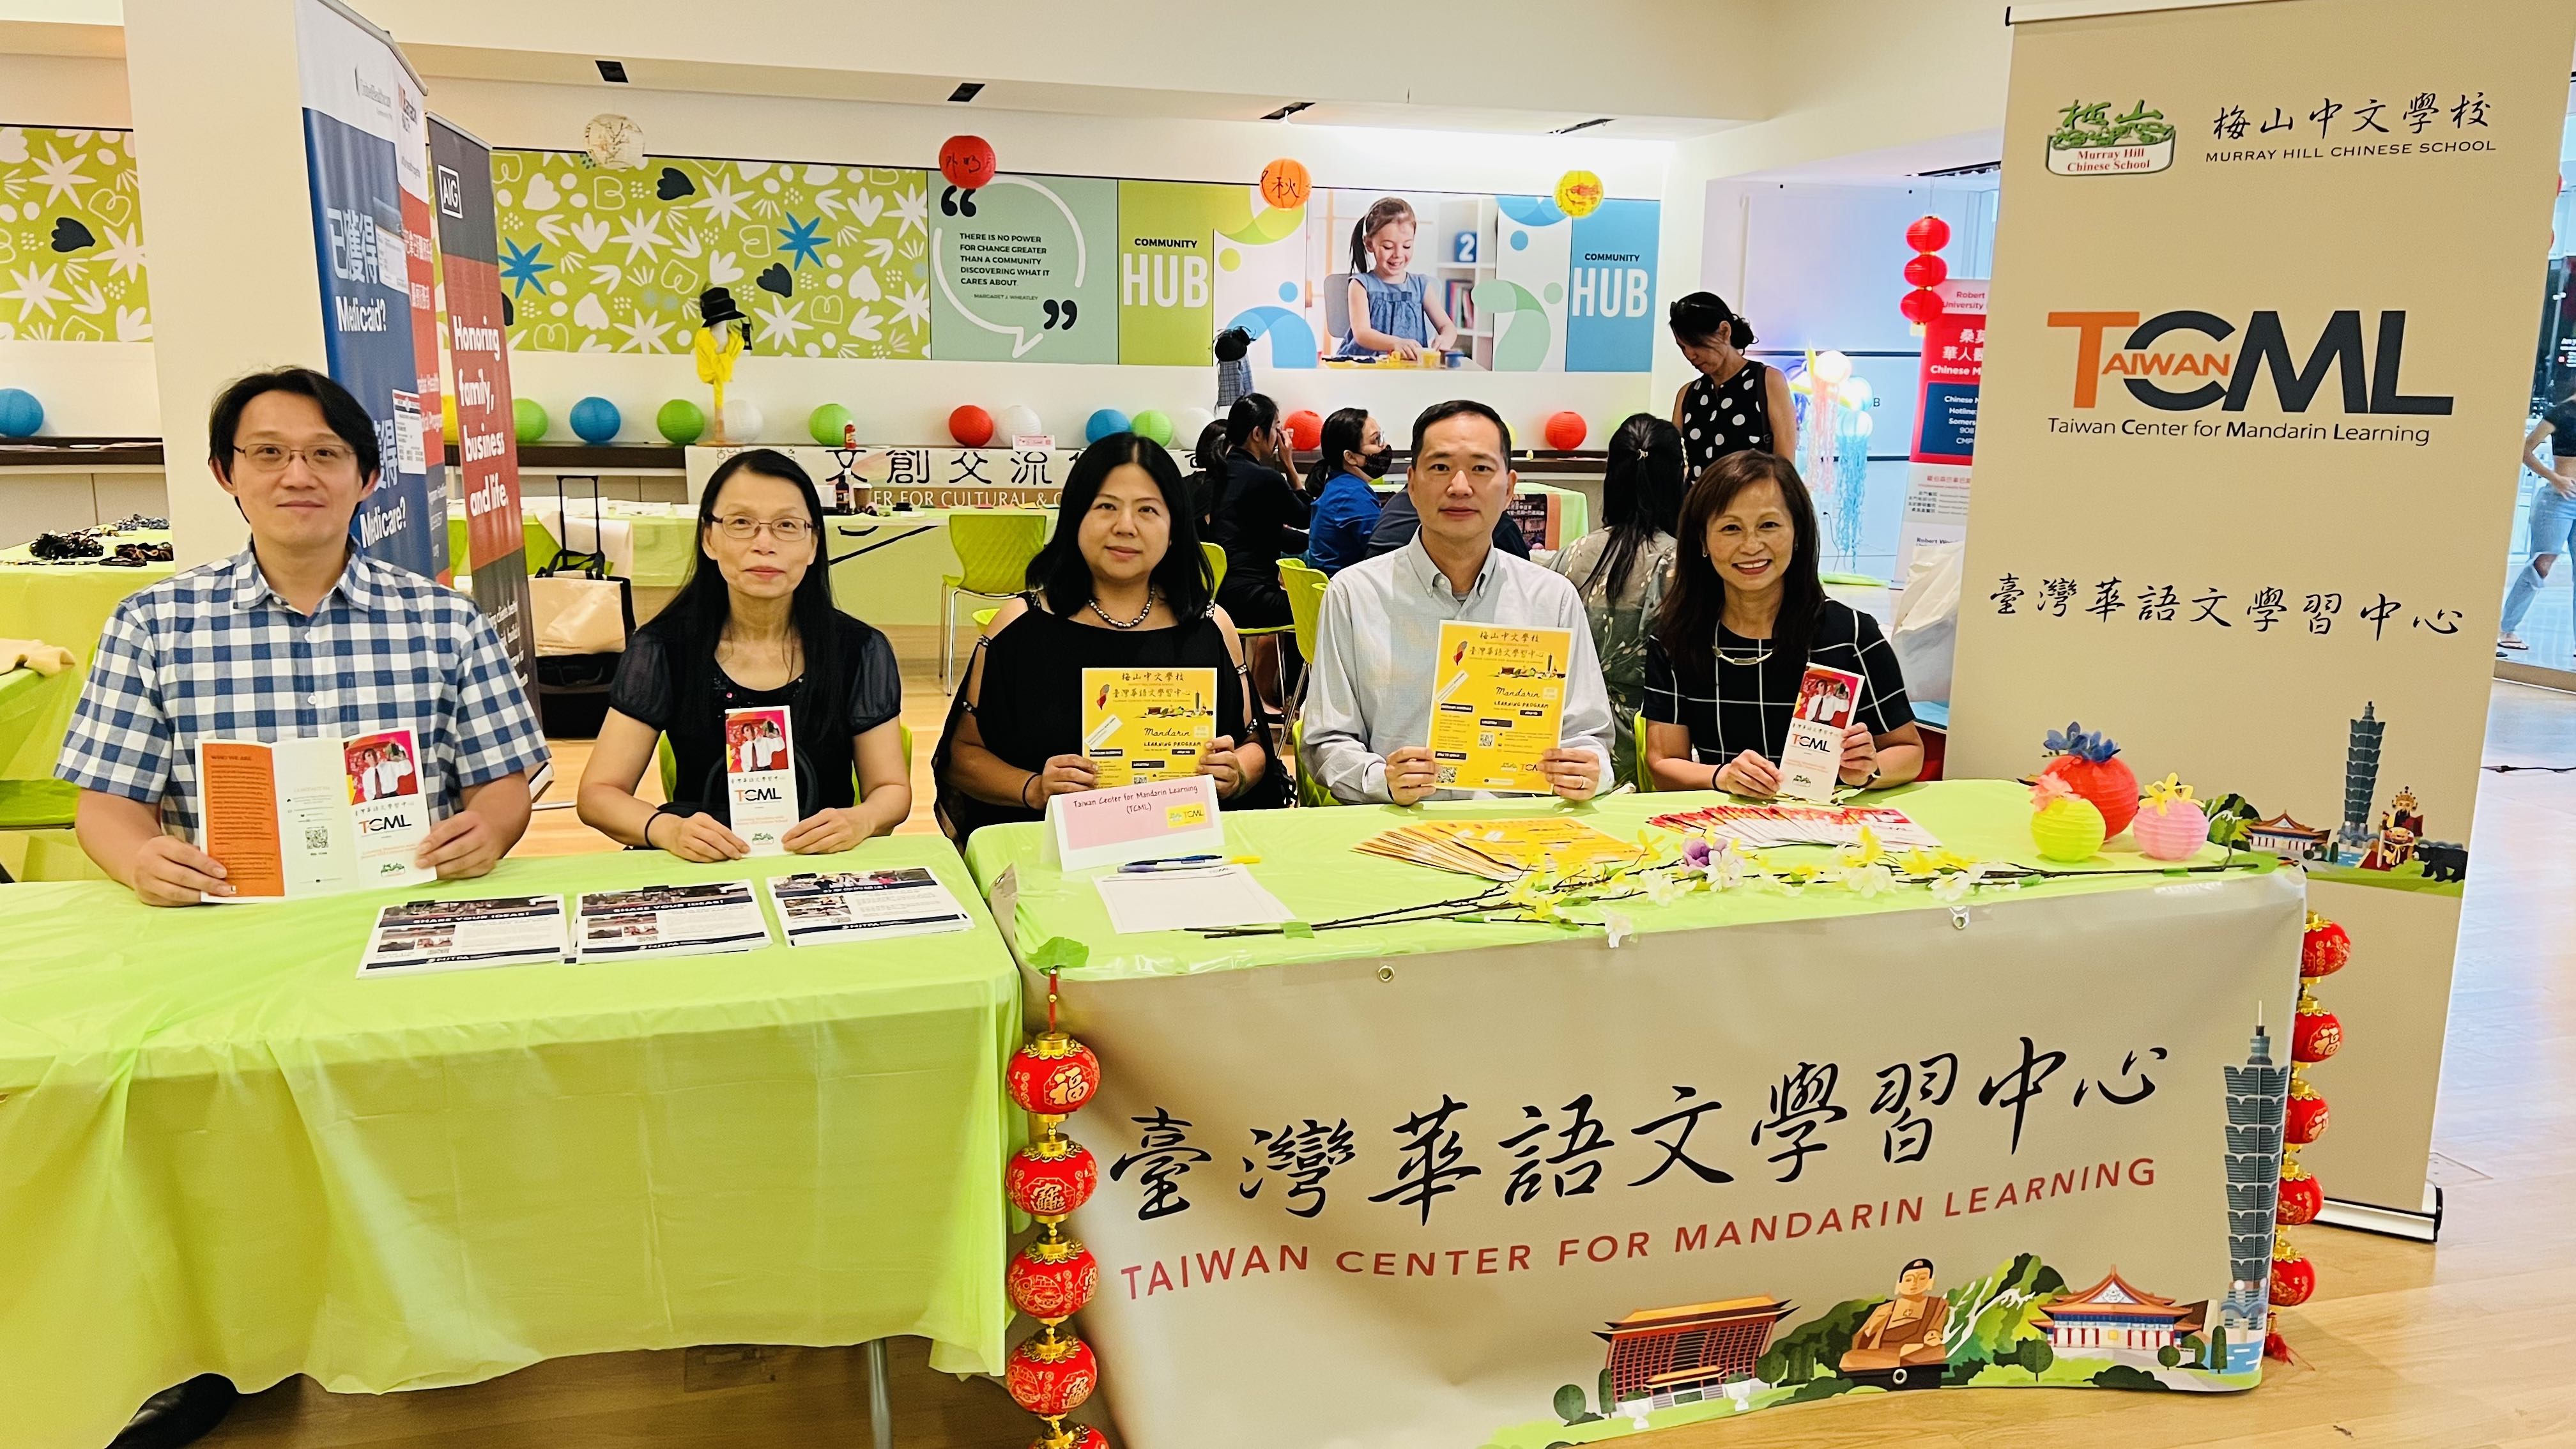 梅山中文學校臺灣華語文學習中心在燈籠會現埸舉辦招生活動